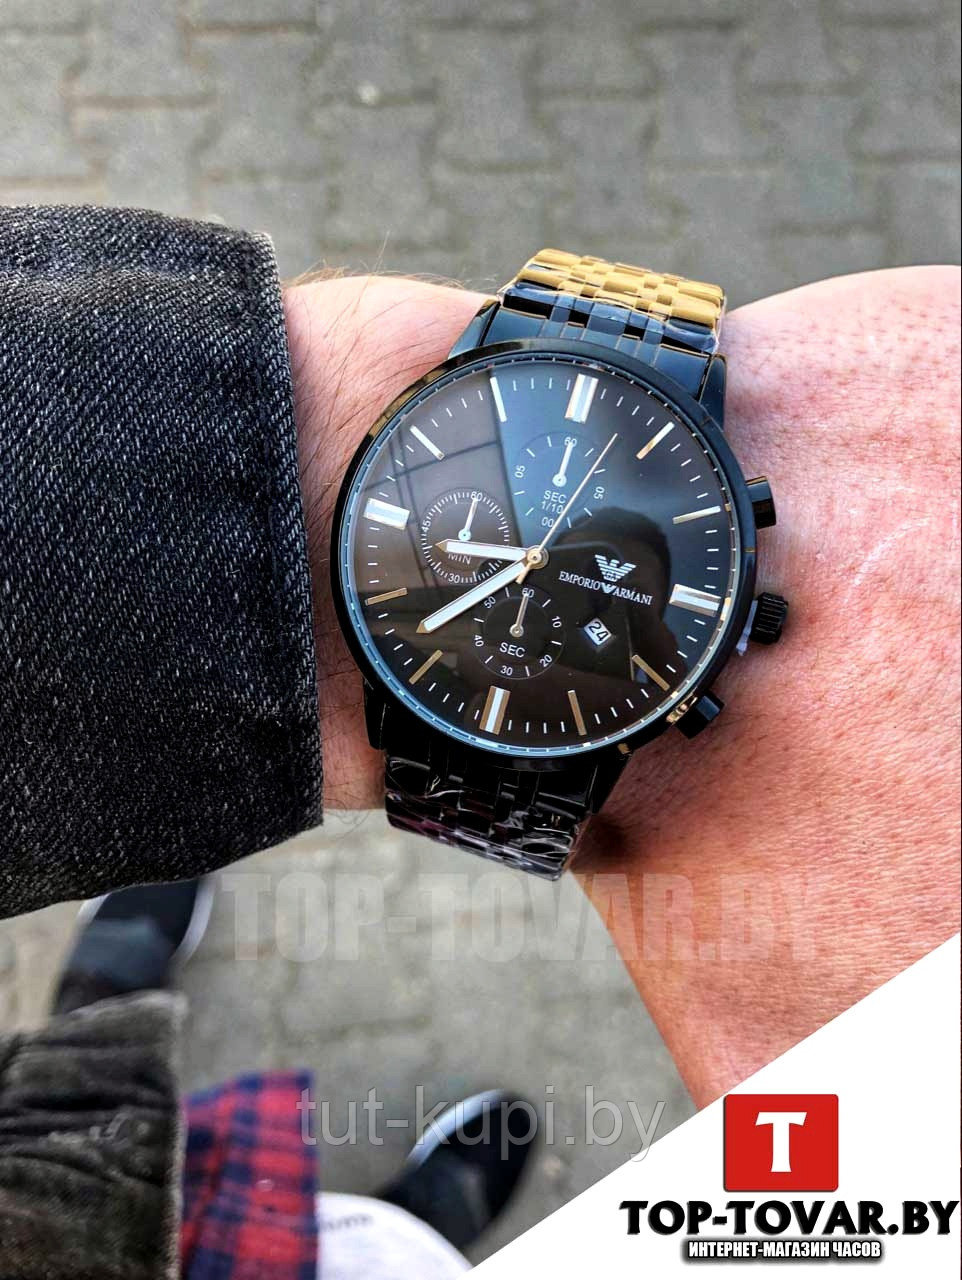 Мужские часы Emporio Armani AR-1056